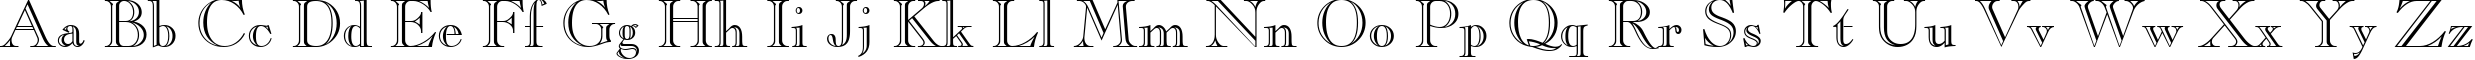 Пример написания английского алфавита шрифтом Caslon Openface BT